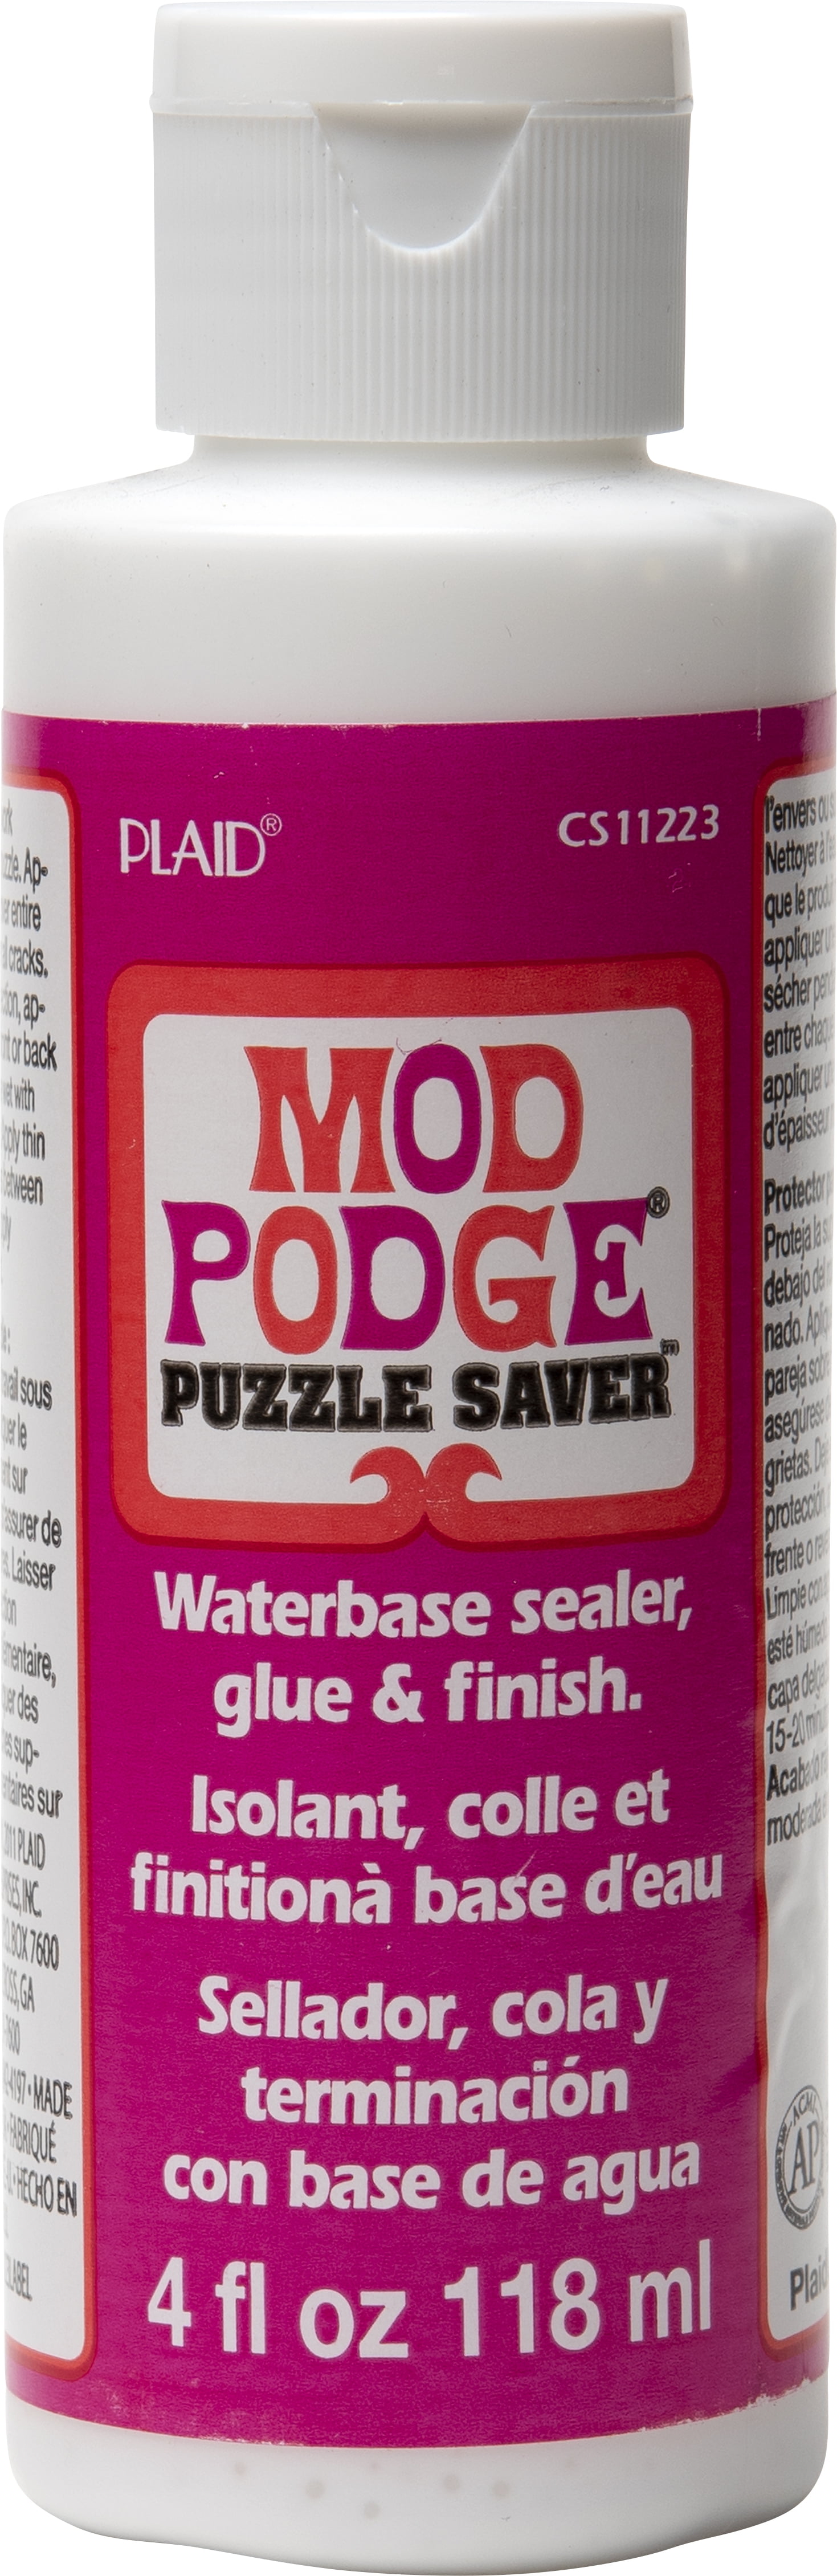 Mod Podge Puzzle Saver - 8 oz - New Bottle - Craft Glue/Sealer/Finish.